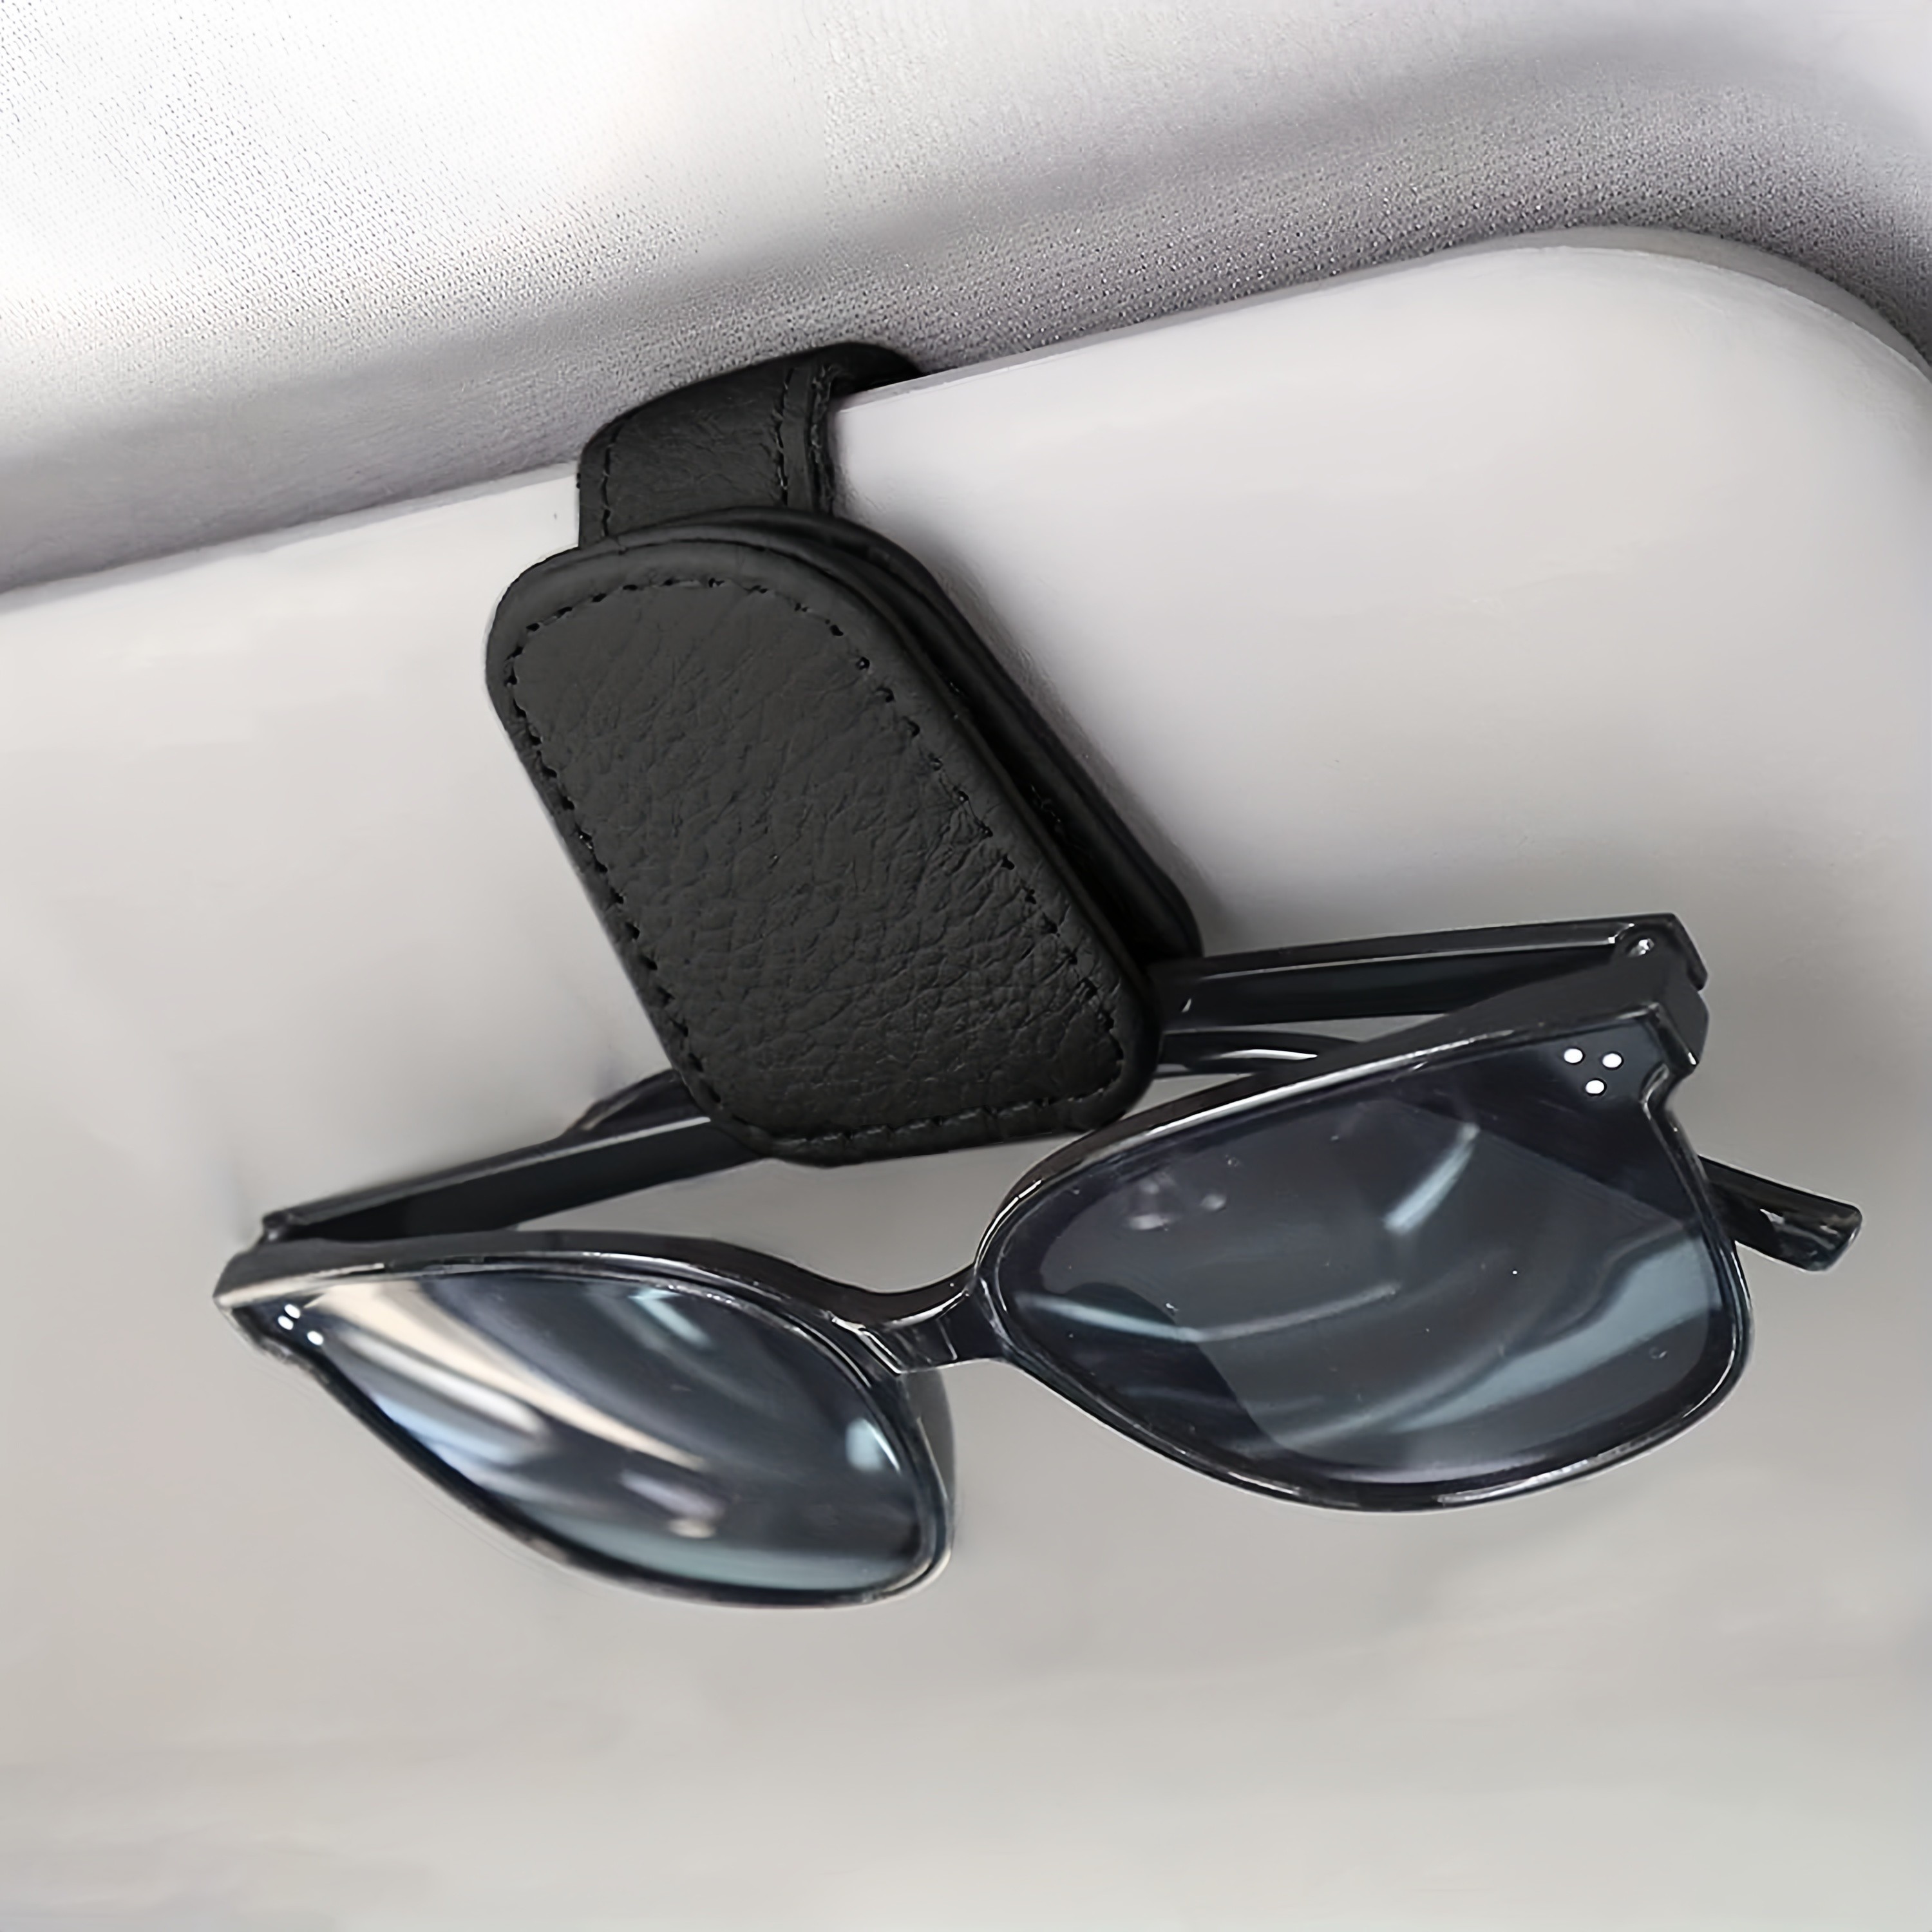 Porte lunettes de soleil voiture - Sur pare-soleil - accessoires